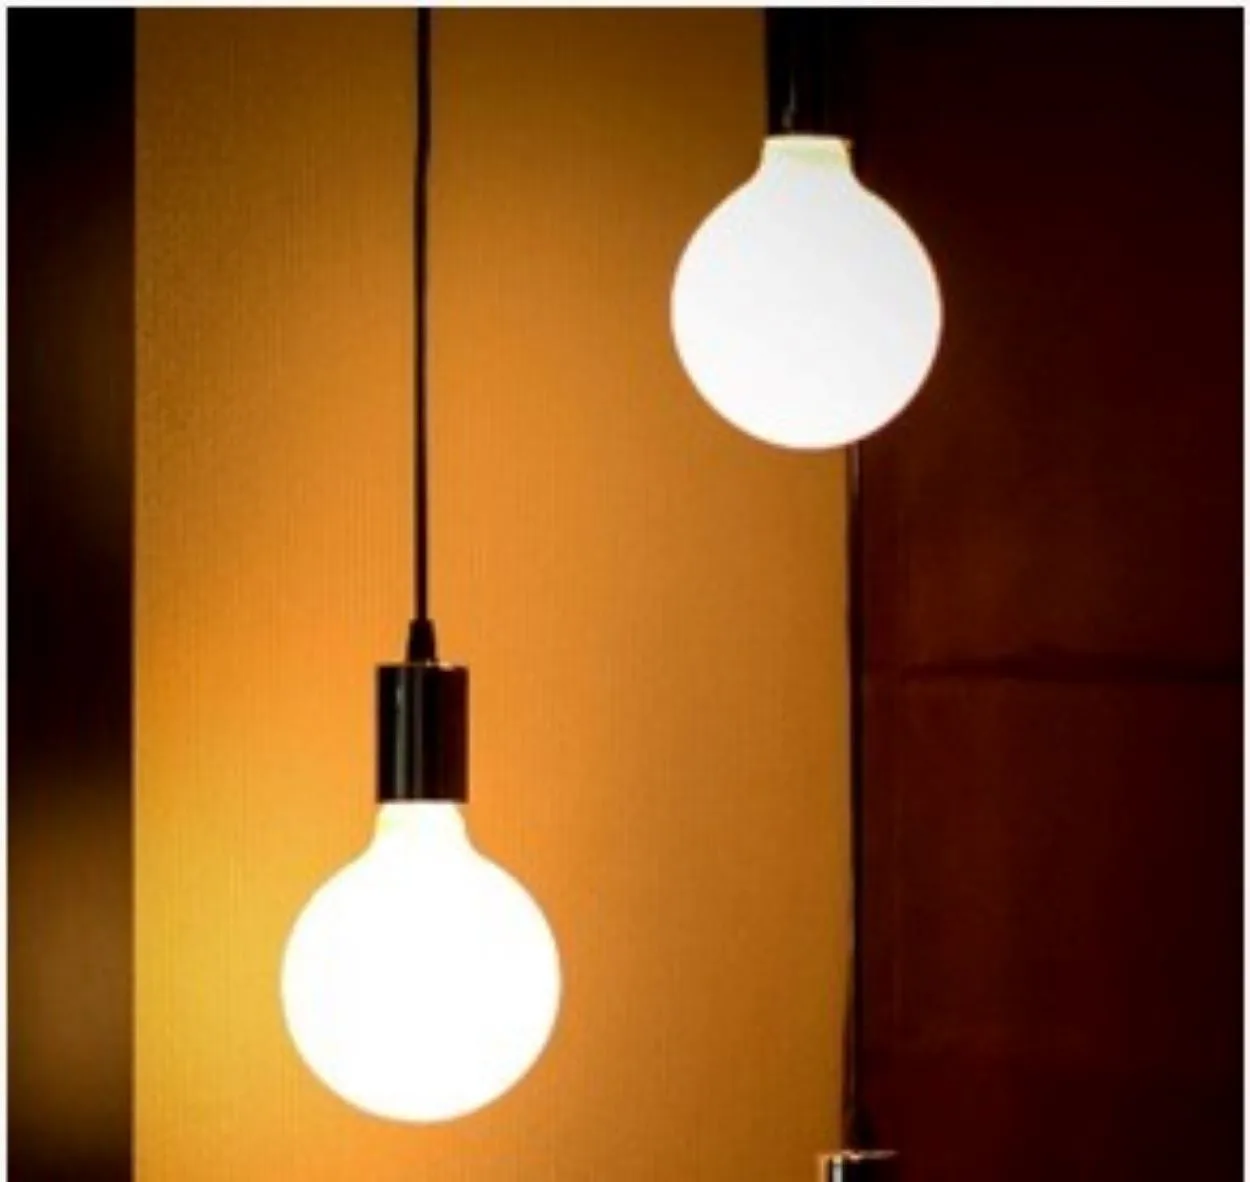  Wat onderscheidt een daglicht LED-lamp van een helder witte LED-lamp (besproken) - Alle verschillen